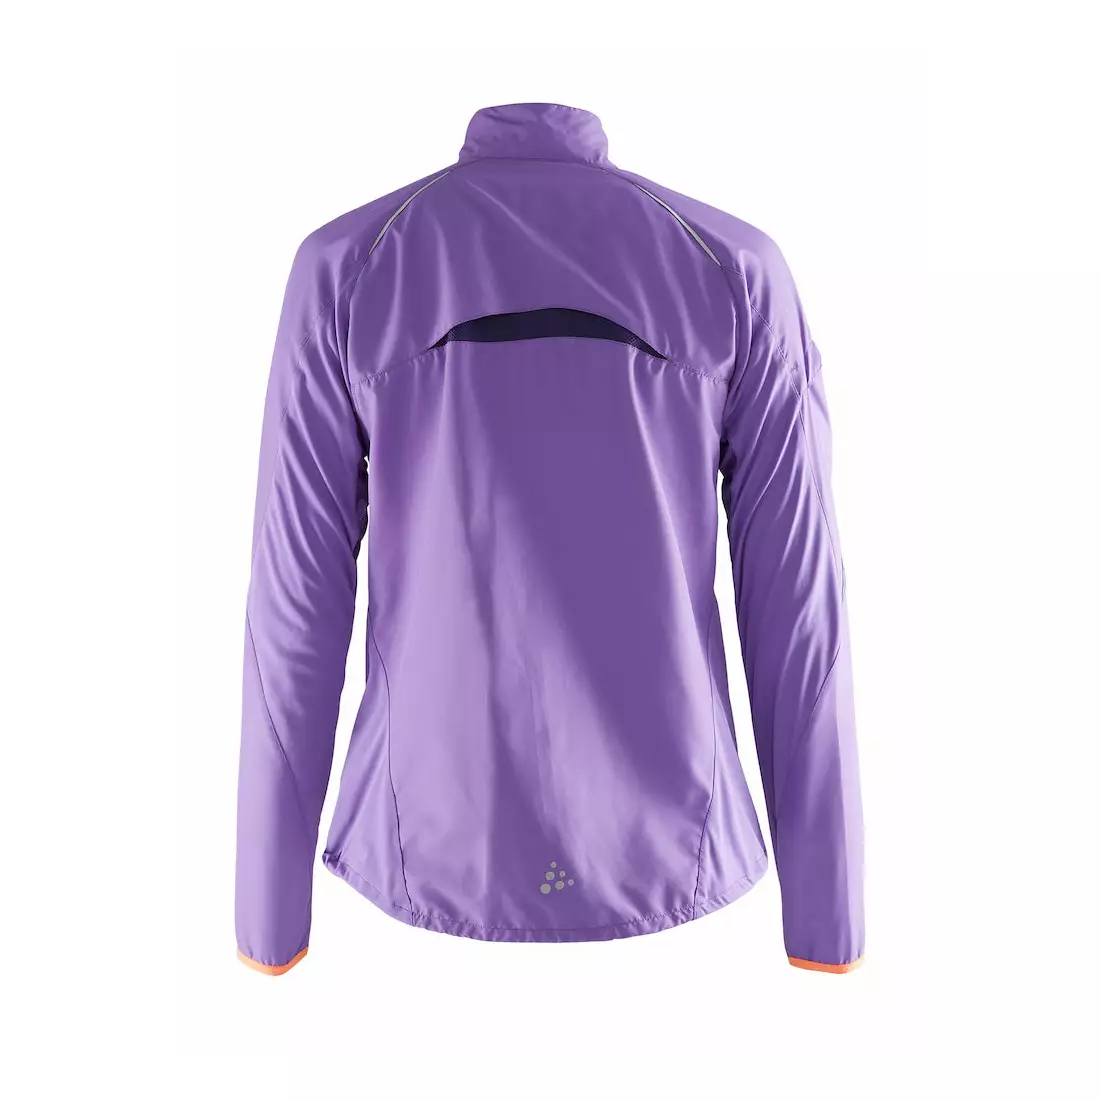 CRAFT DEVOTION women's running jacket, windbreaker 1903189-2495